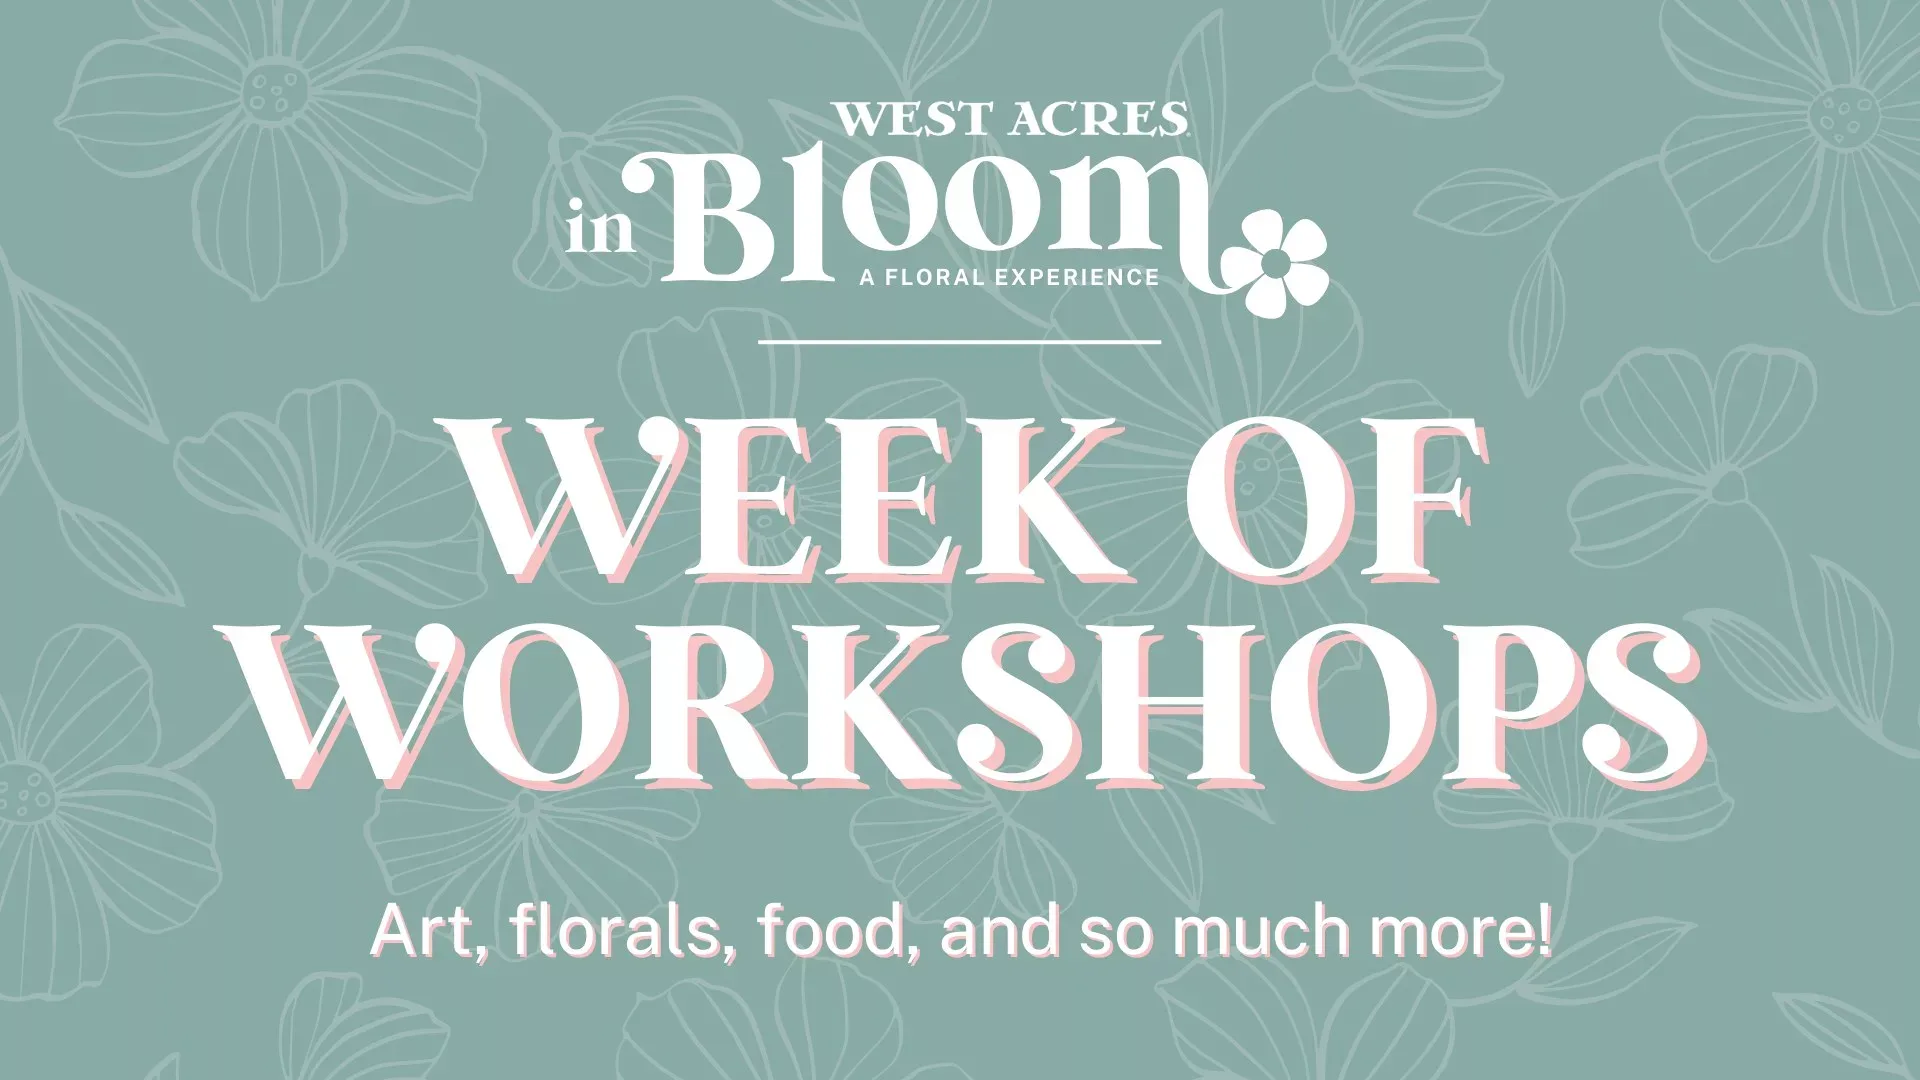 West Acres in Bloom: Week of Workshops